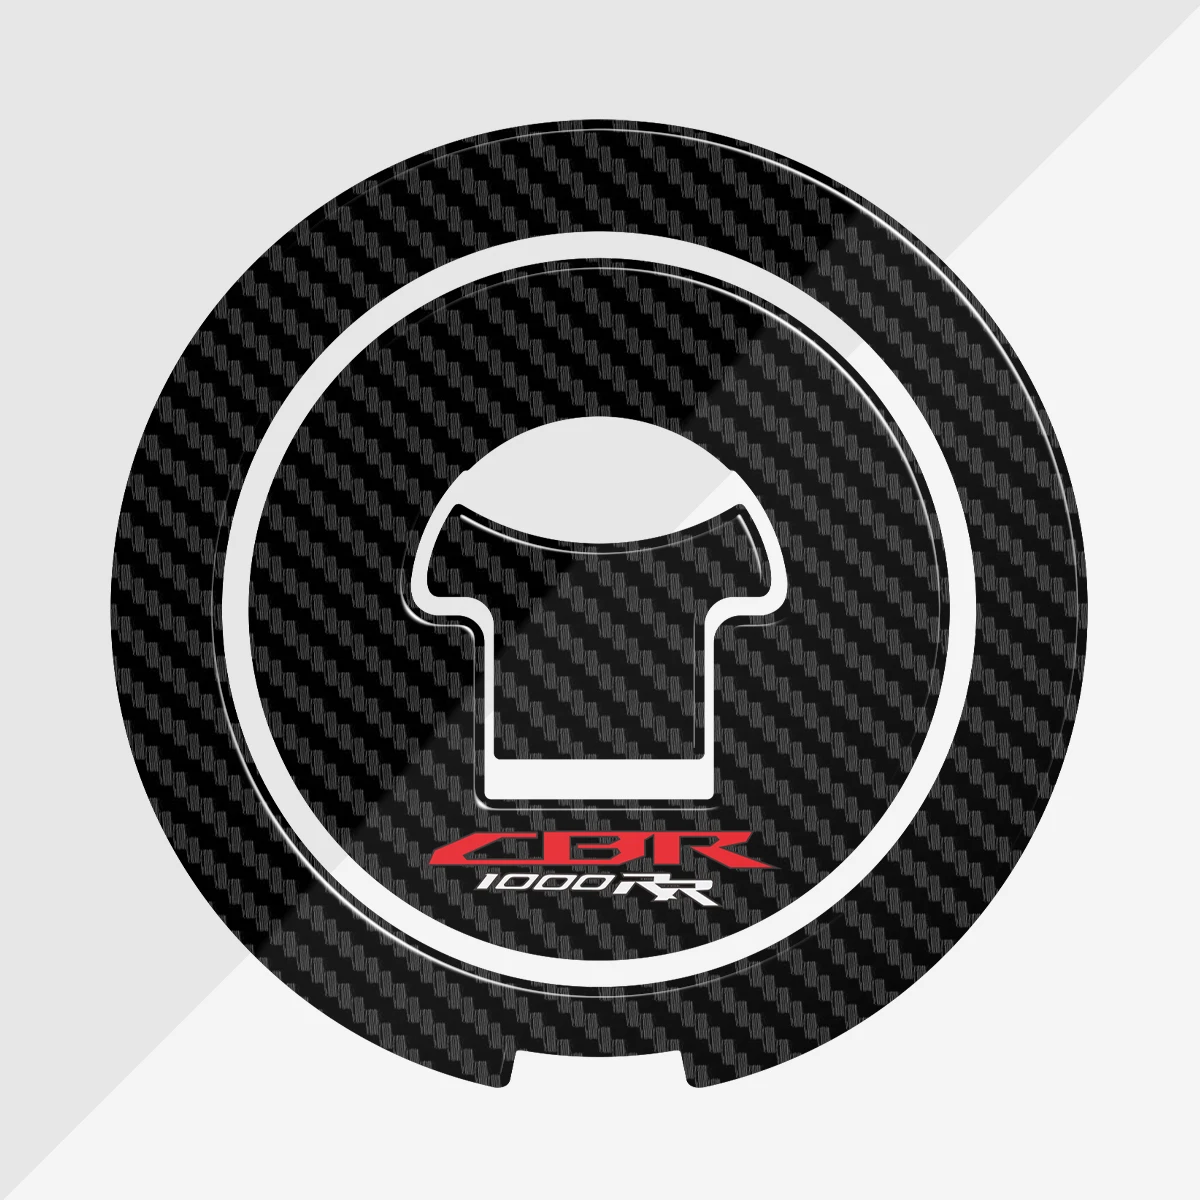 3D Carbon Fiber Tank Pad Gas Cap Decal Protector Cover For Honda CBR1000RR CBR 1000RR 2004-2013 2012 2011 2010 2009 2008 2007 car headlamp lens for honda odyssey rb3 2009 2010 2011 2012 2013 car replacement lens auto shell cover